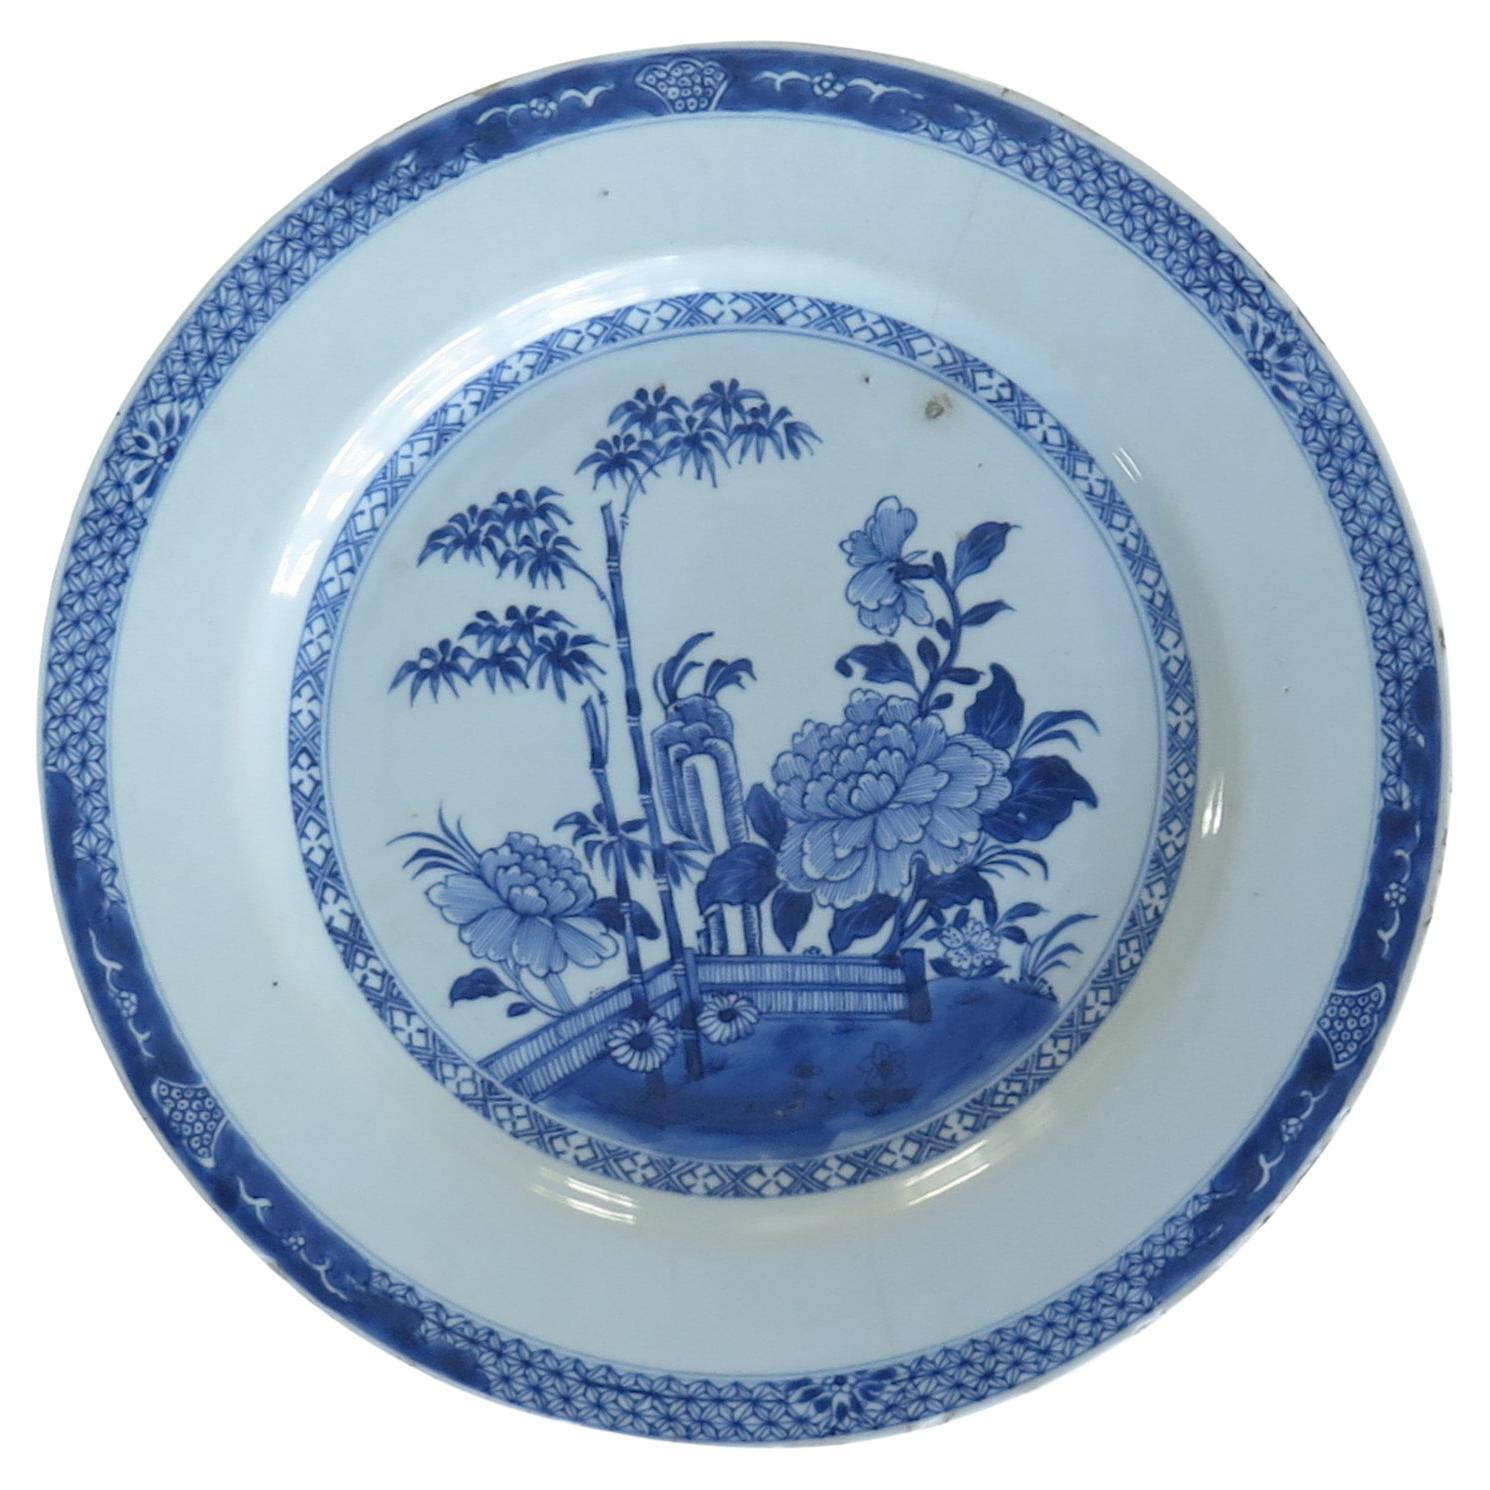 Chinesische Platte oder große Platte aus dem 18. Jahrhundert in Blau und Weiß, Qing Qianlong, ca. 1770